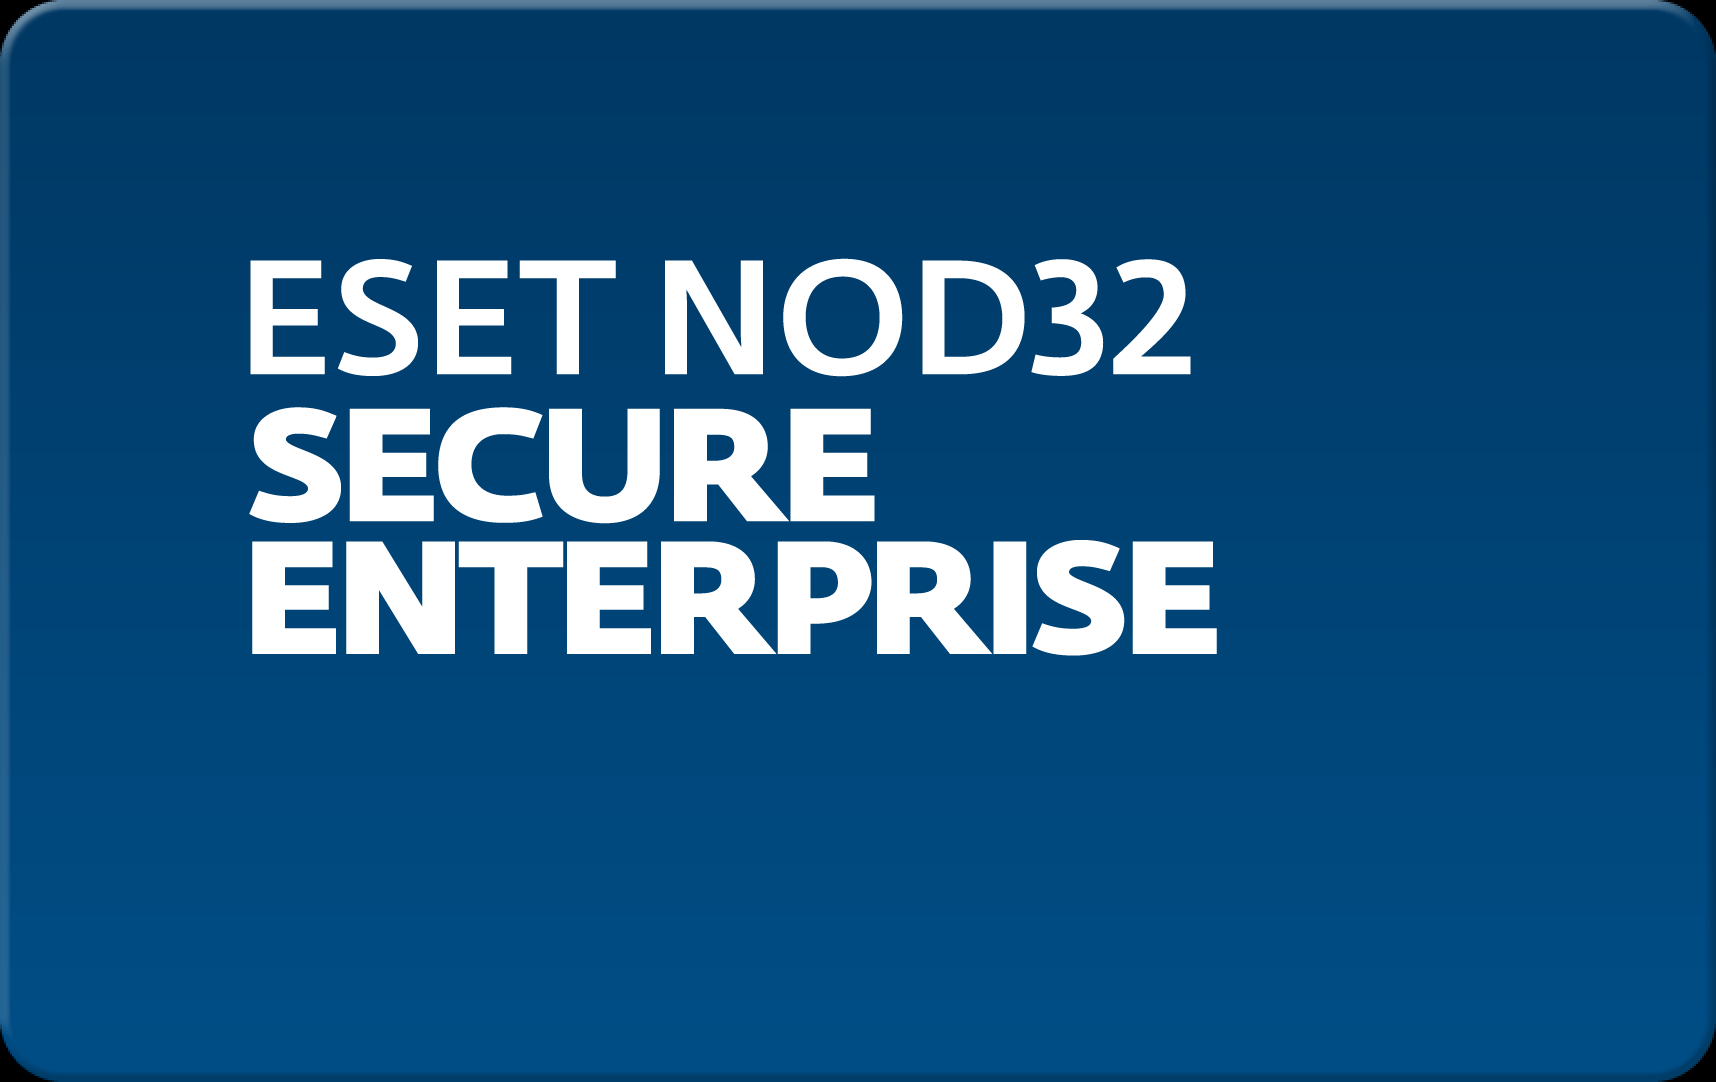        Eset NOD32 Secure Enterprise  160 